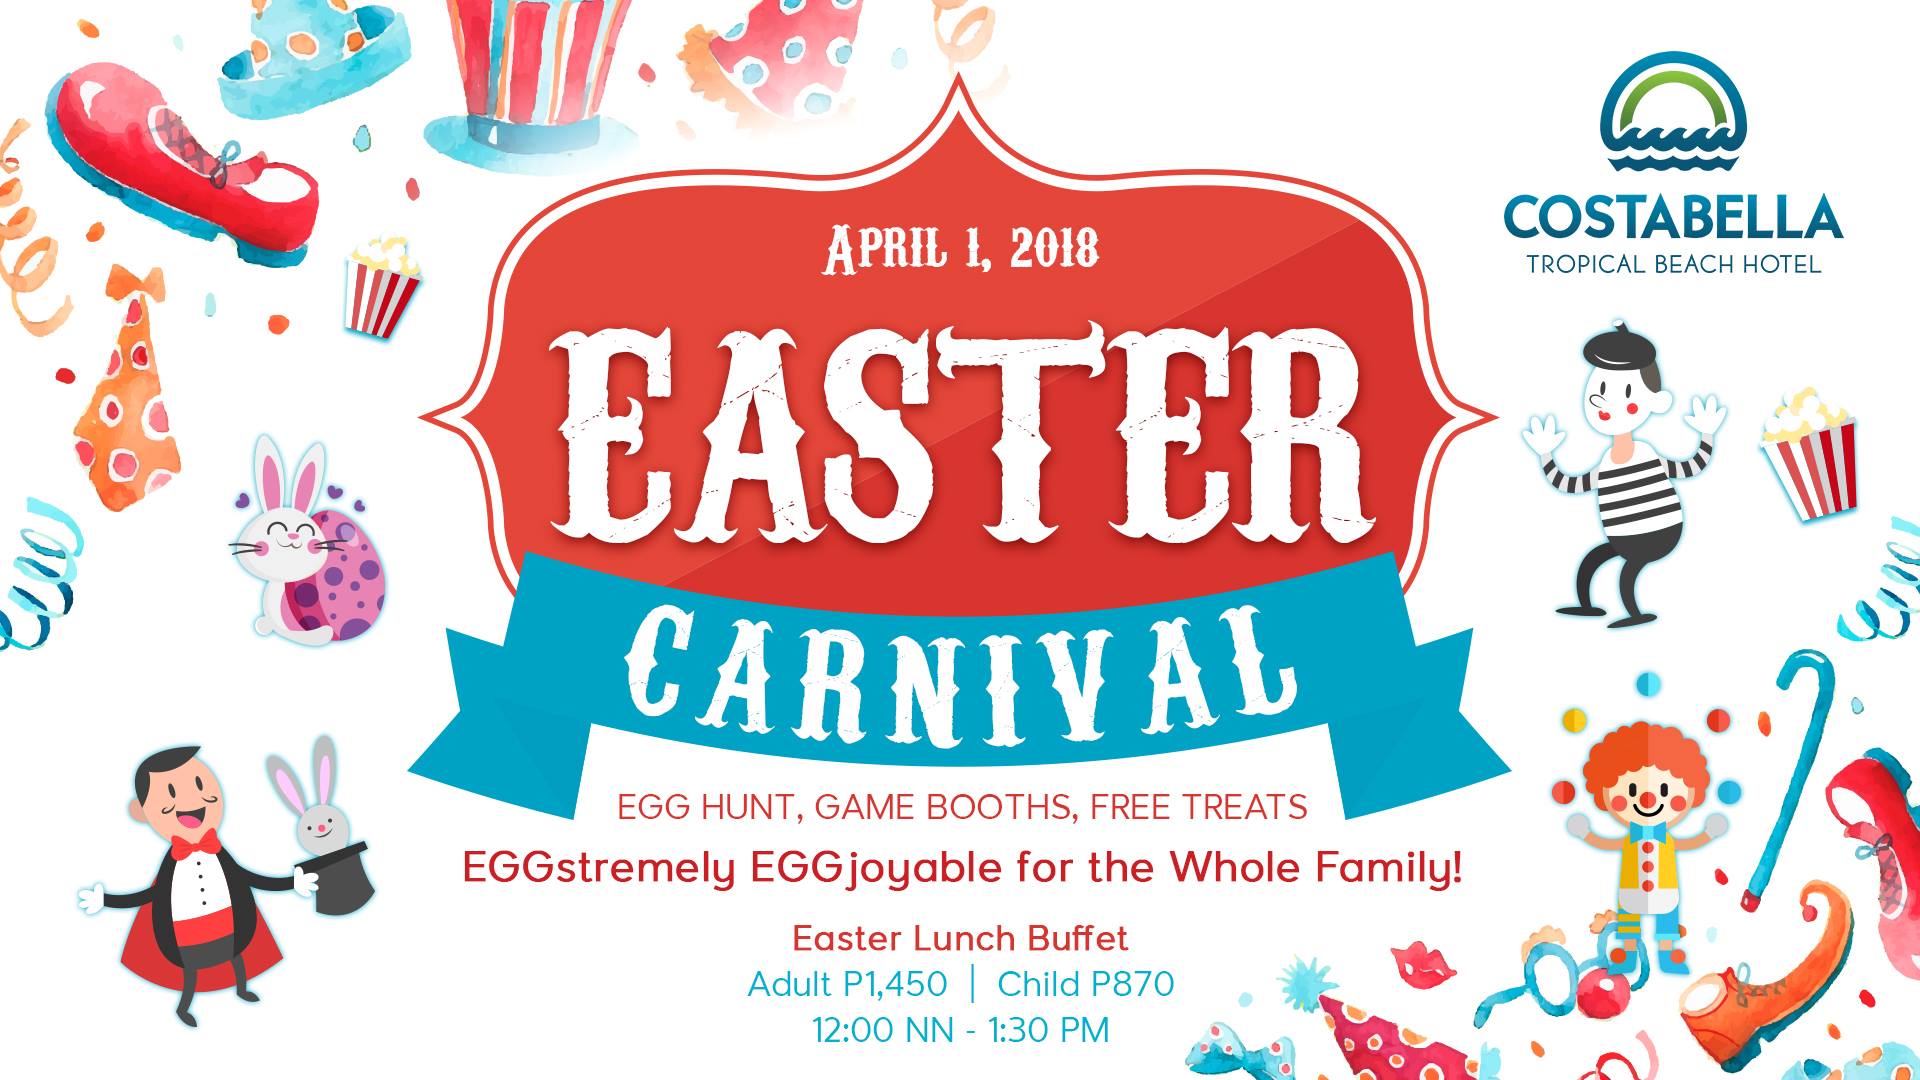 Costabella Resort Easter Egg hunt